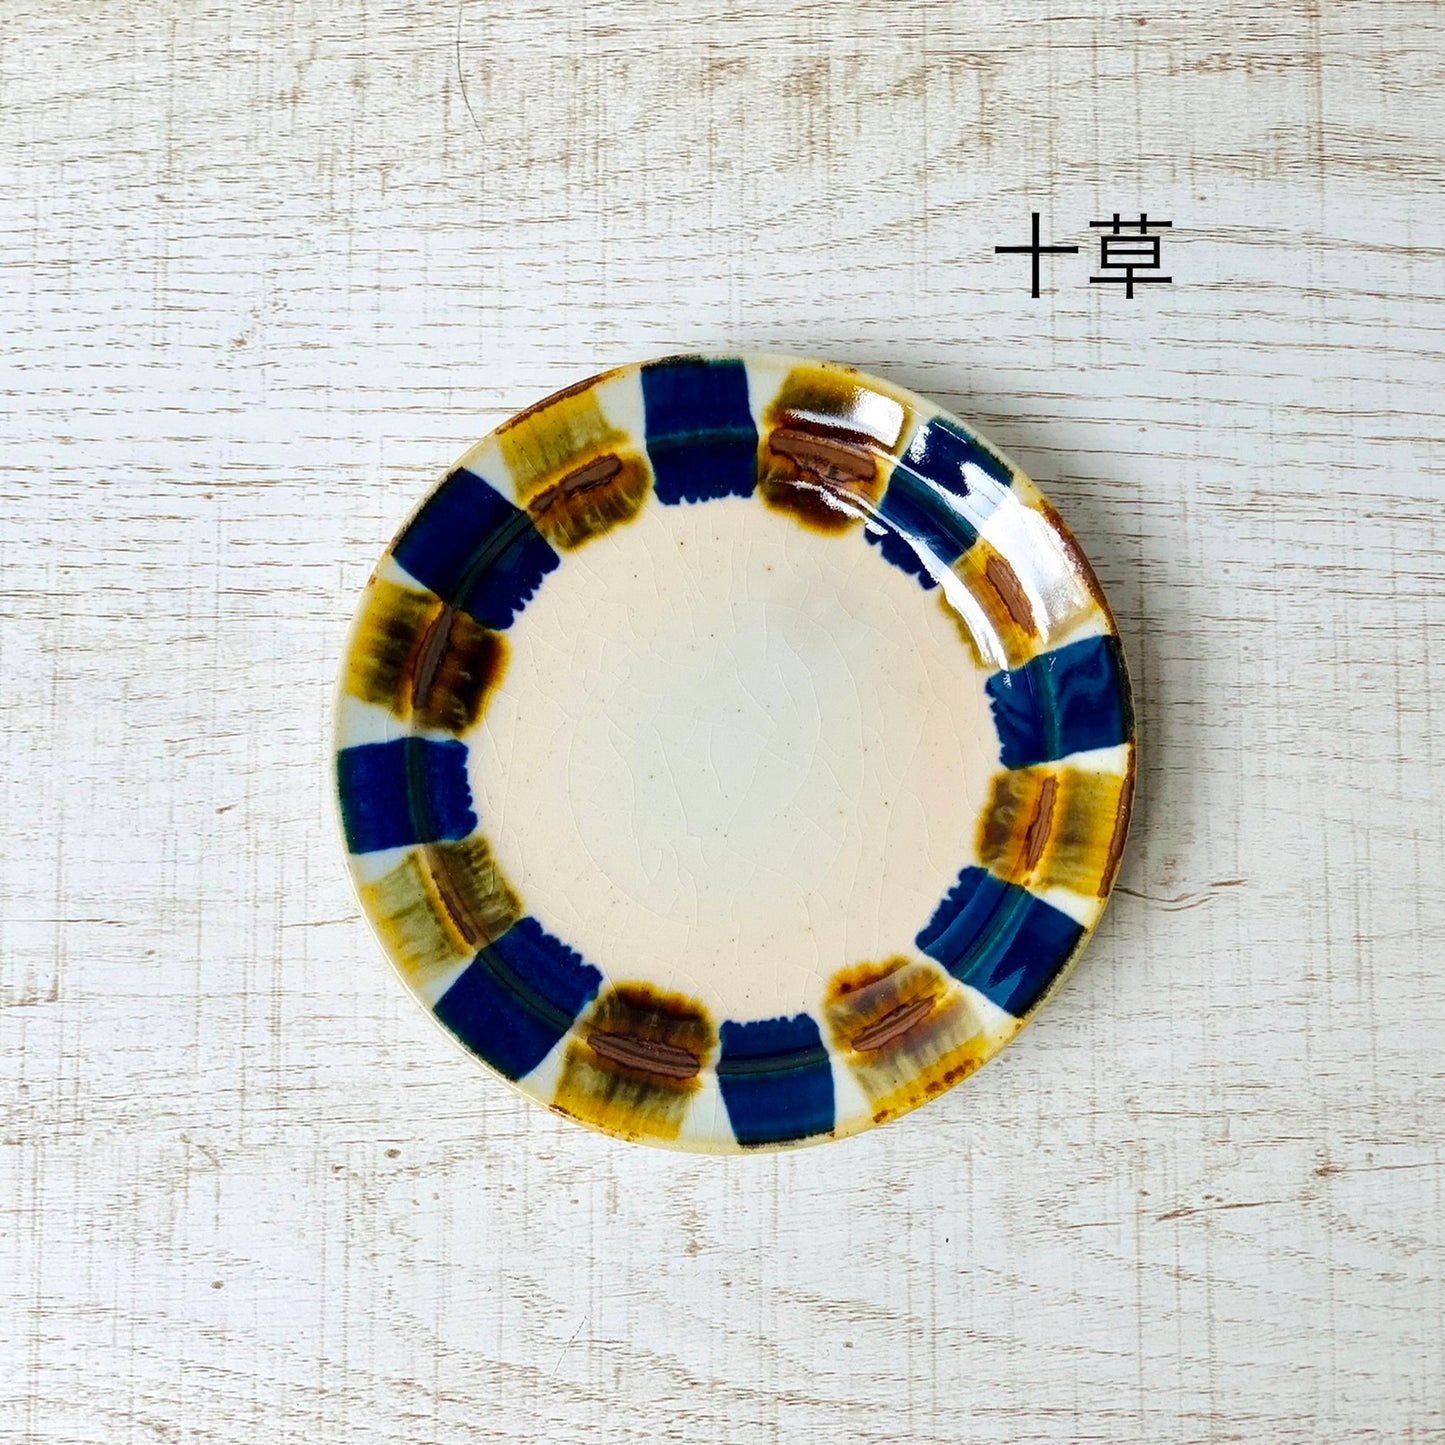 [波佐见烧] [蓝染窑] [靛蓝] [110盘] [小盘] 波佐见烧 Yachimun 风格盘日式时尚成人民间艺术